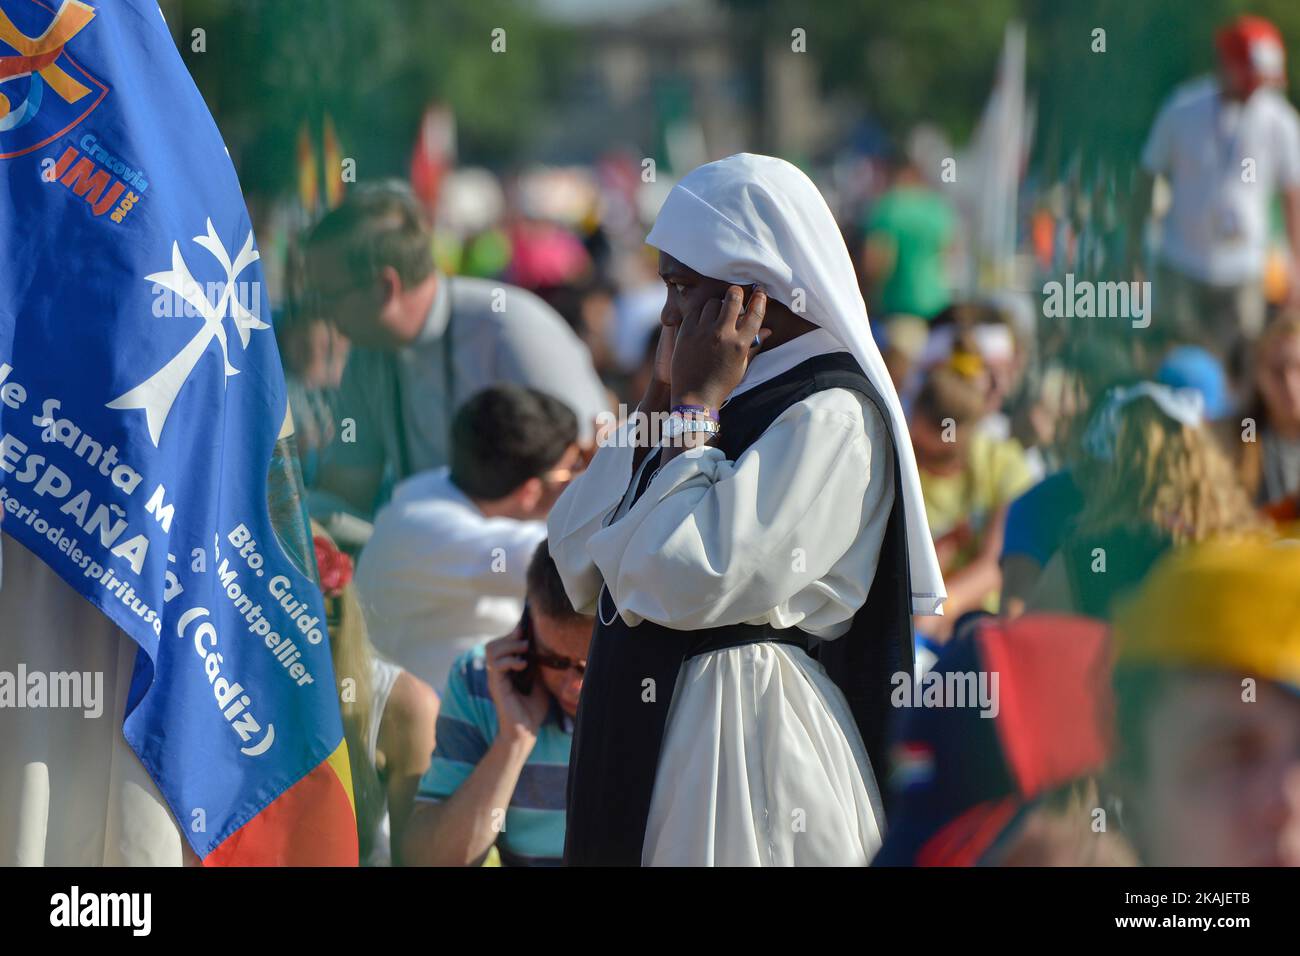 Le pape François rencontre des milliers de jeunes pèlerins du monde entier pendant le chemin de la Croix dans le parc Blonia de Cracovie, le vendredi 29 juillet 2016, à Cracovie, en Pologne. Banque D'Images